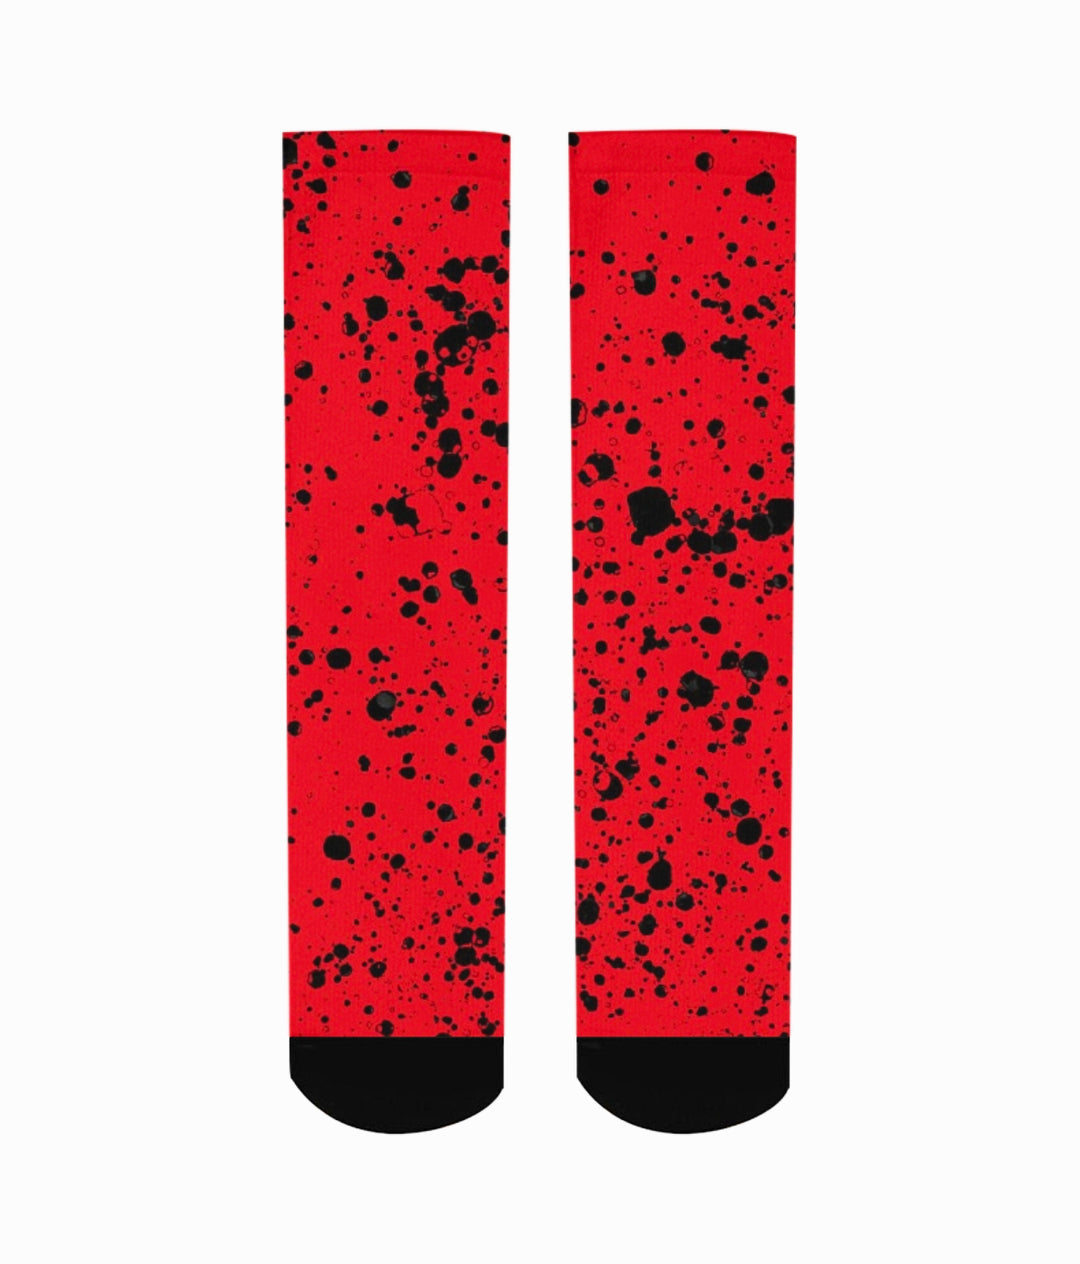 Splatter | Air jordan 4 Red Cement Inspired Socks